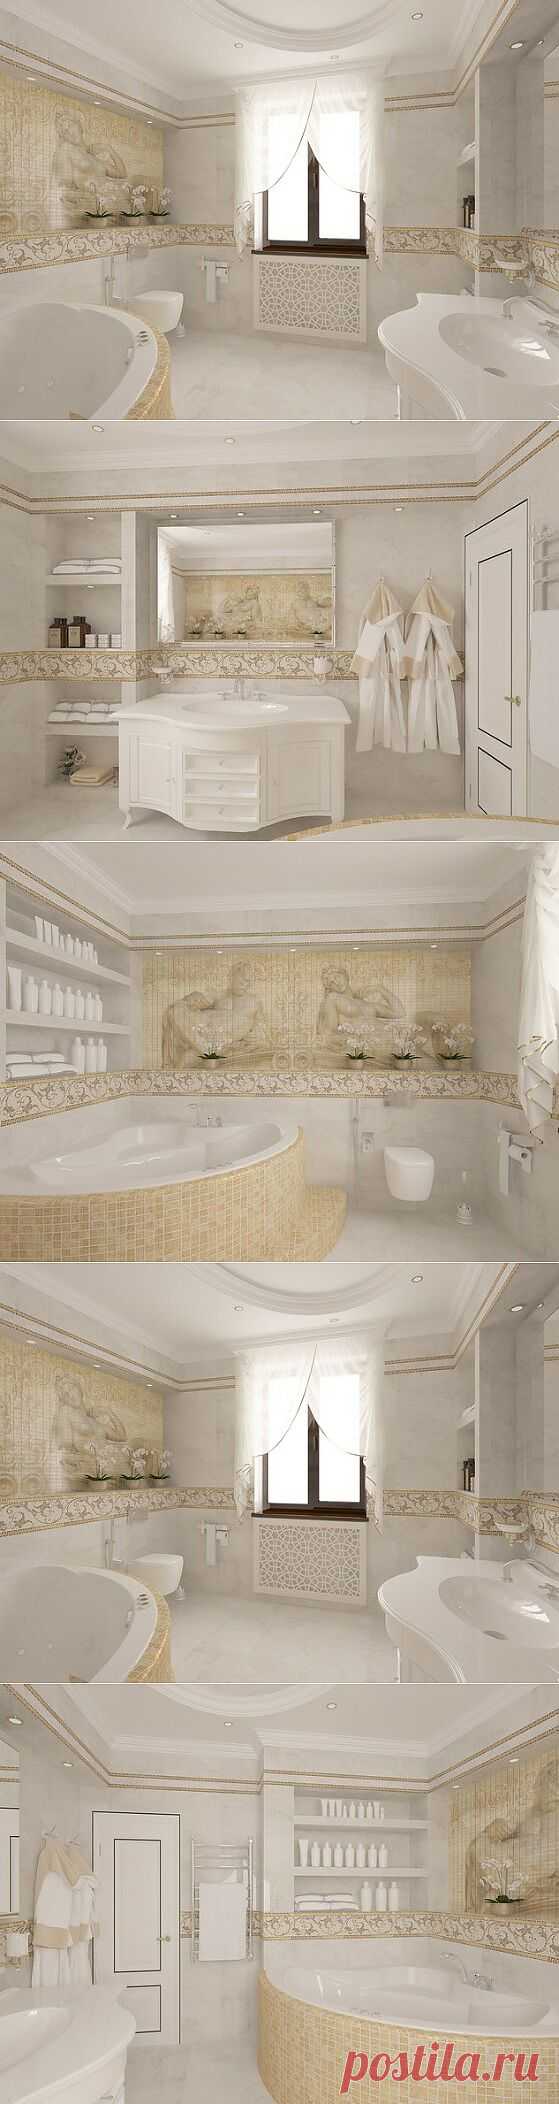 Родительская ванная комната - дизайн-проект с фото - Ремонт@Mail.Ru